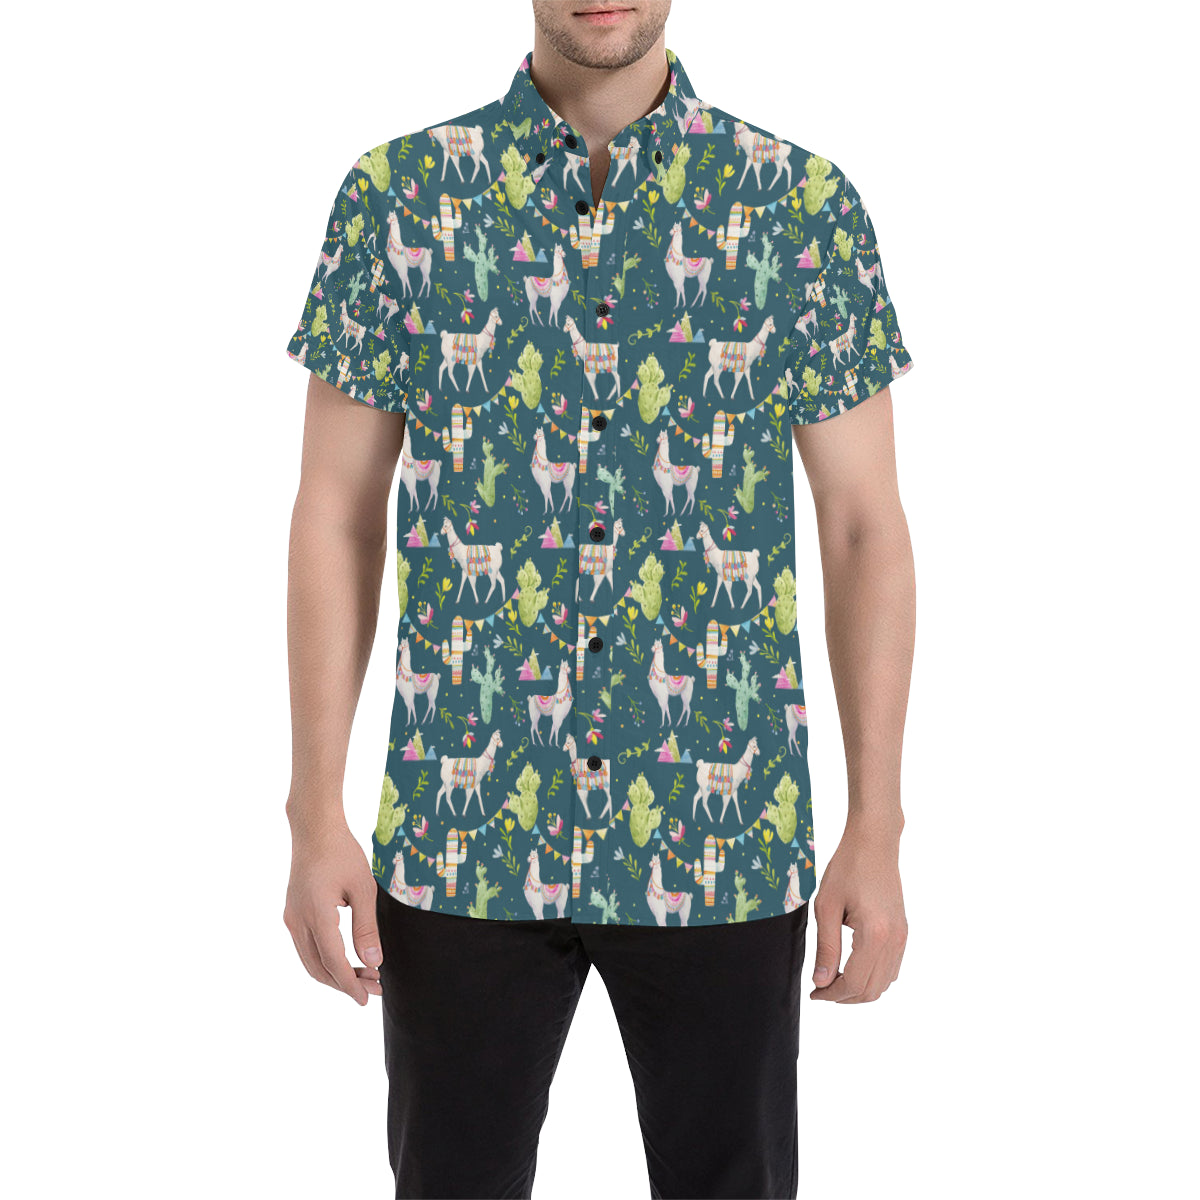 Llama with Cactus Design Print Men's Short Sleeve Button Up Shirt